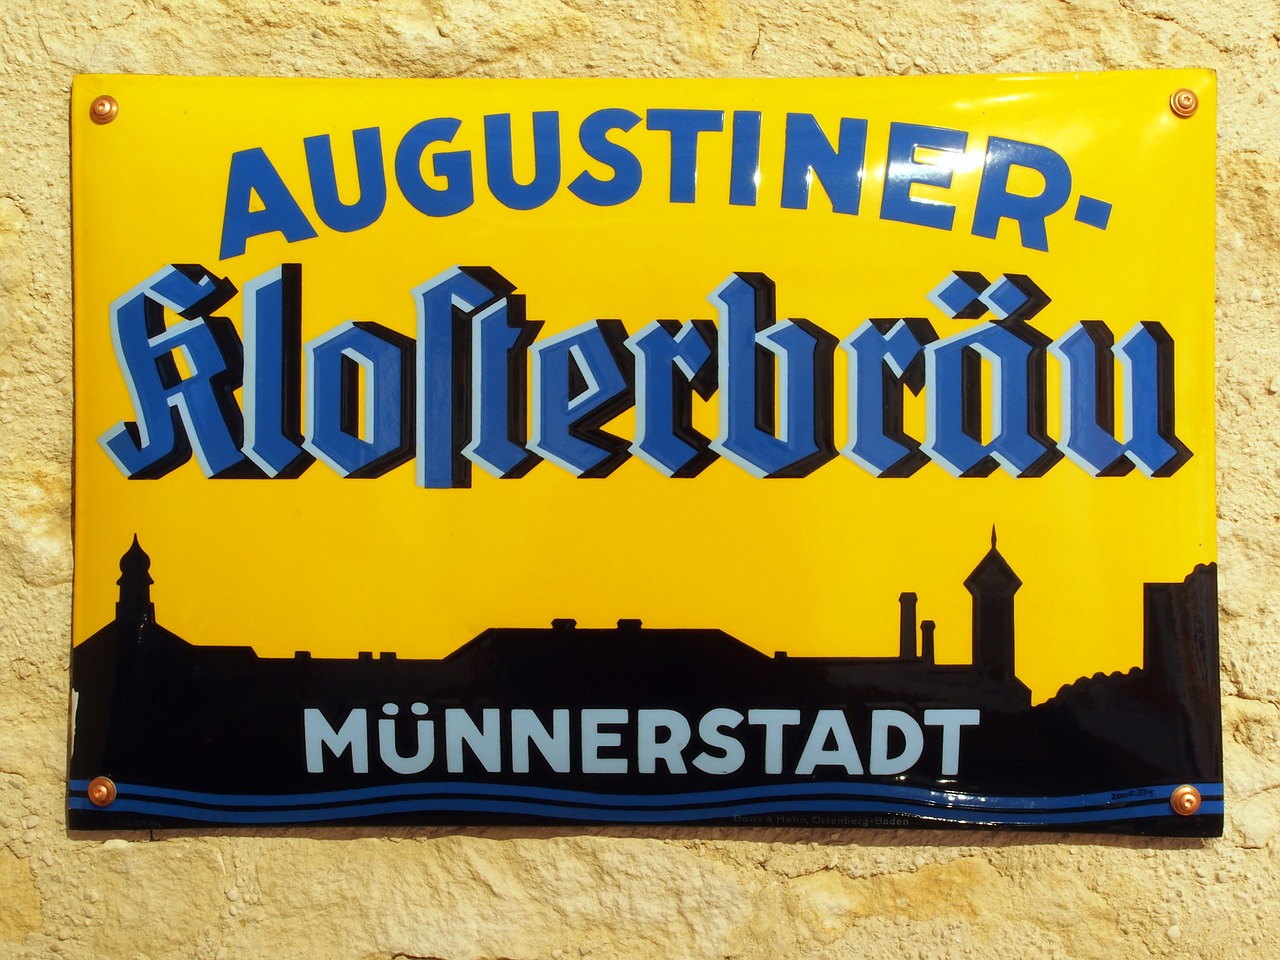 augustiner klosterbräu münnerstadt advertising free photo